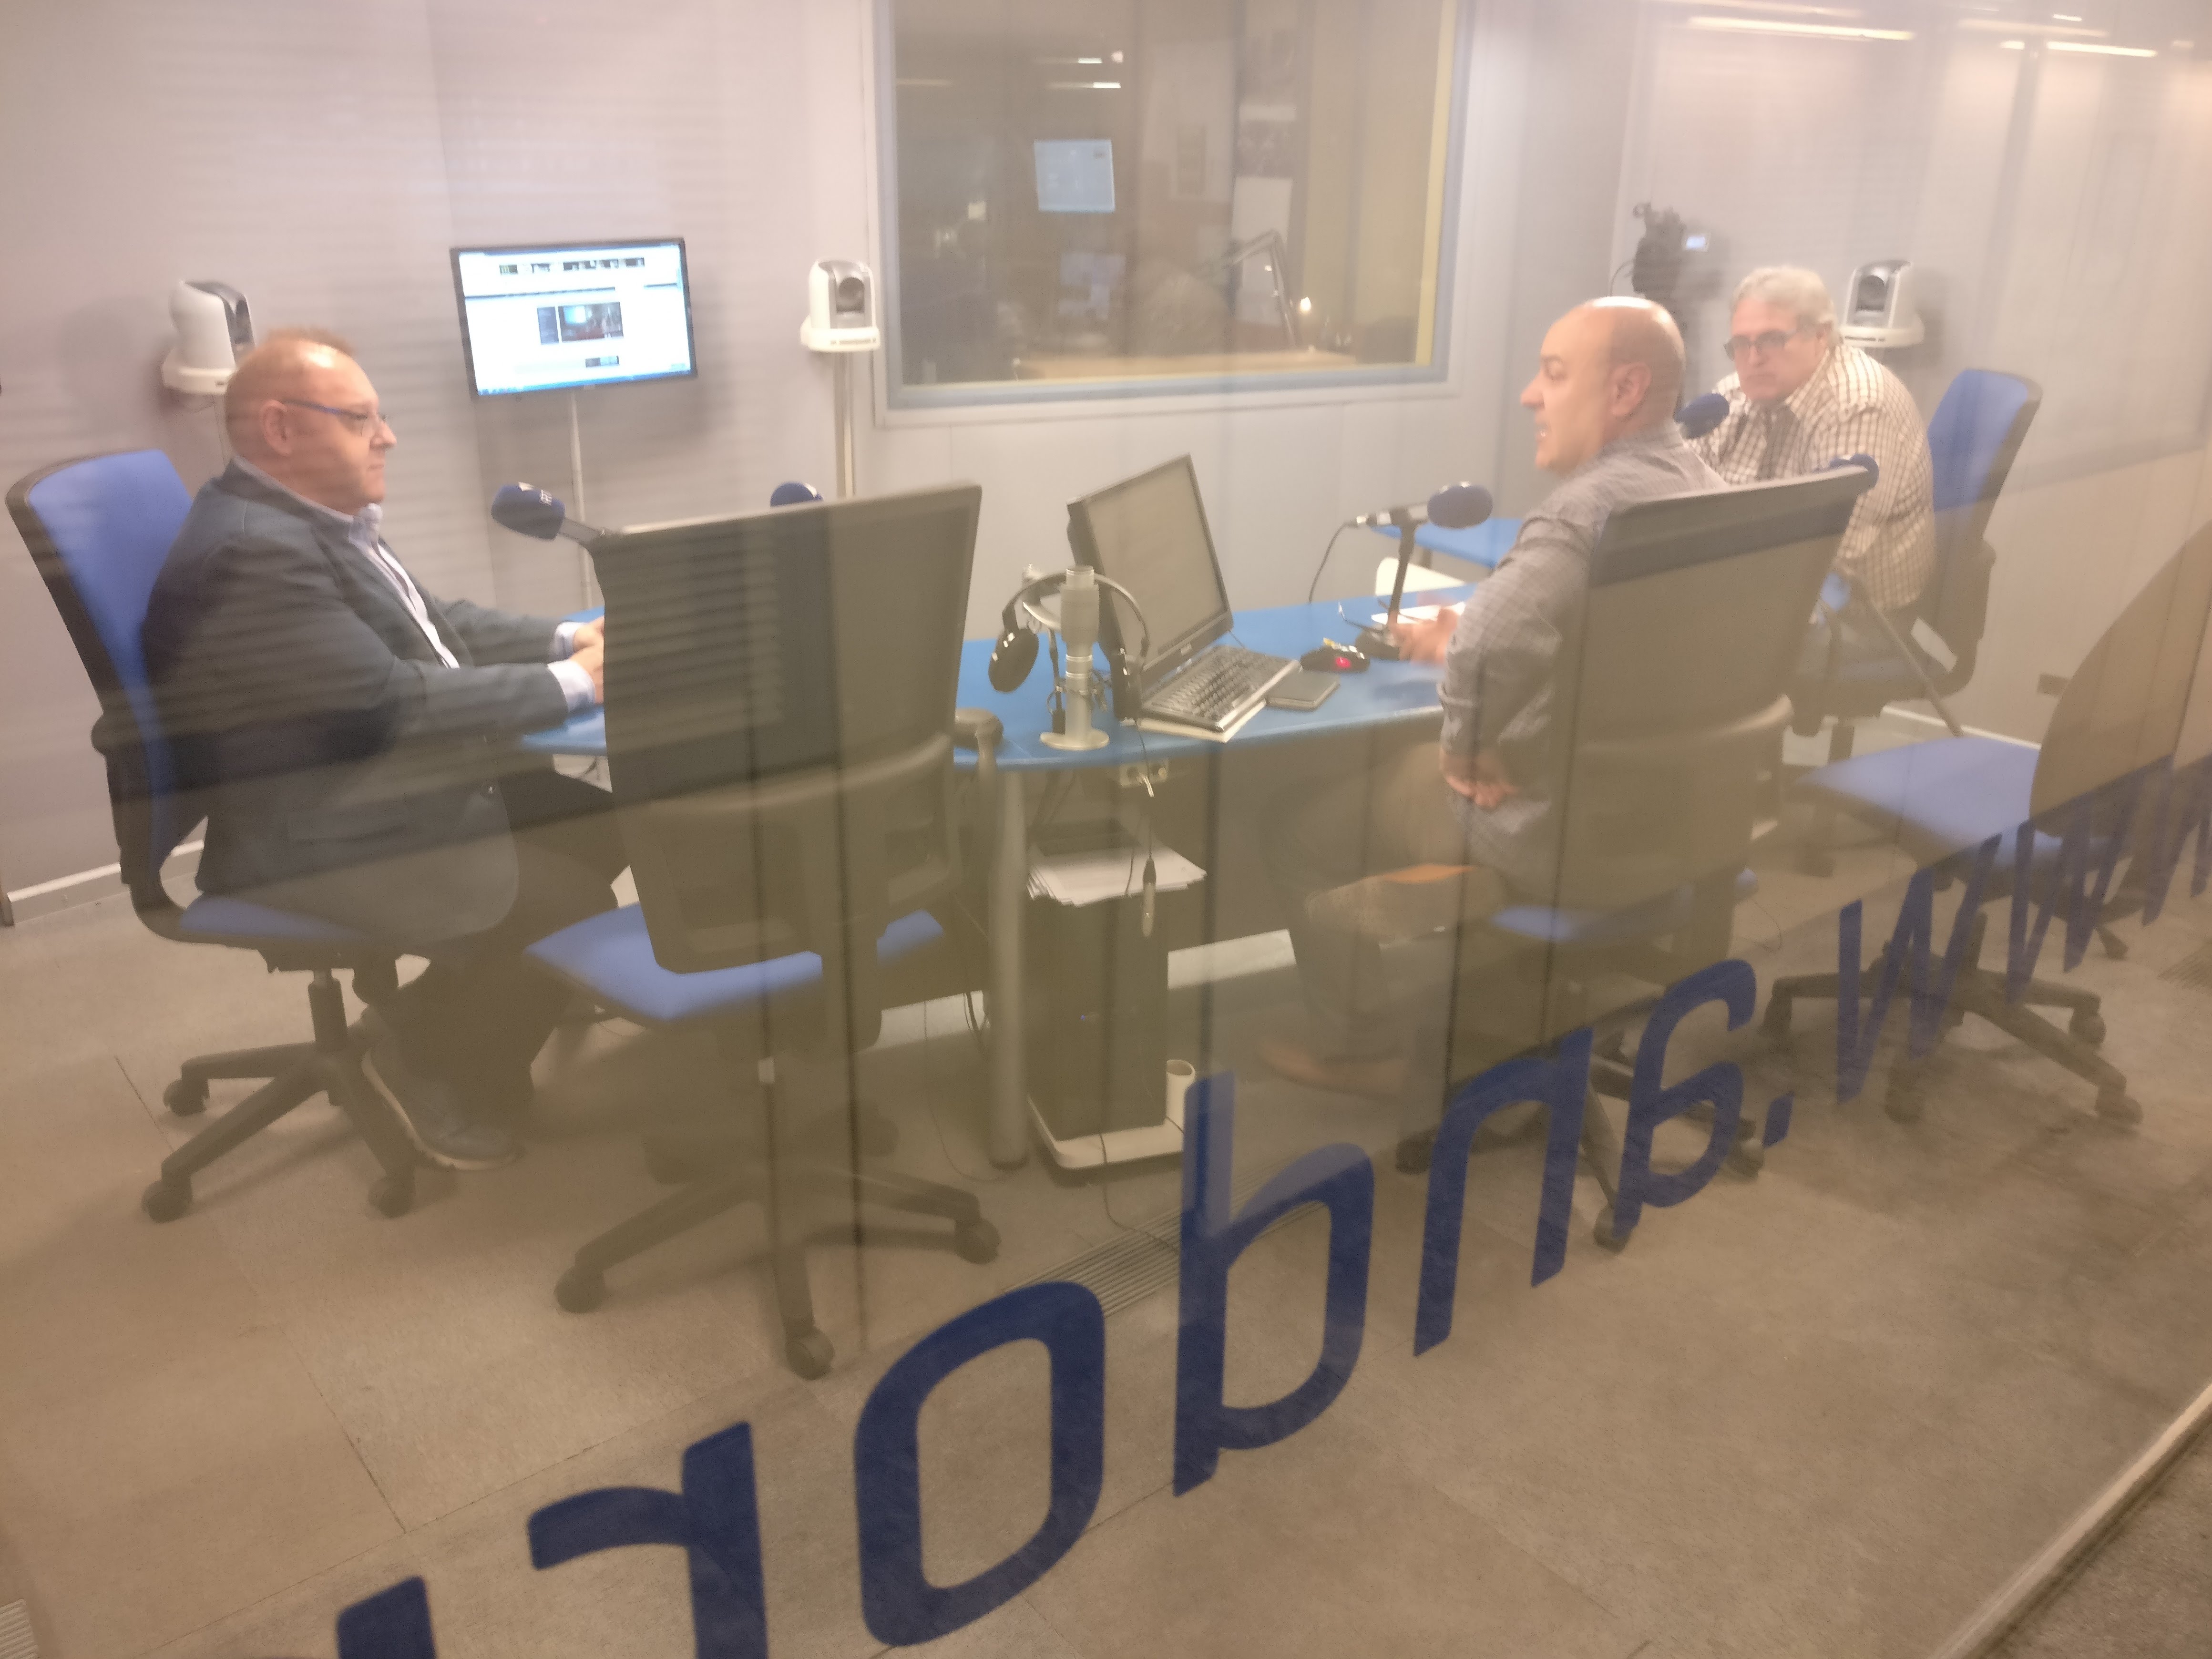 Tertúlia amb Josep Maria Camp i Jacint Risco 10 de maig del 2018